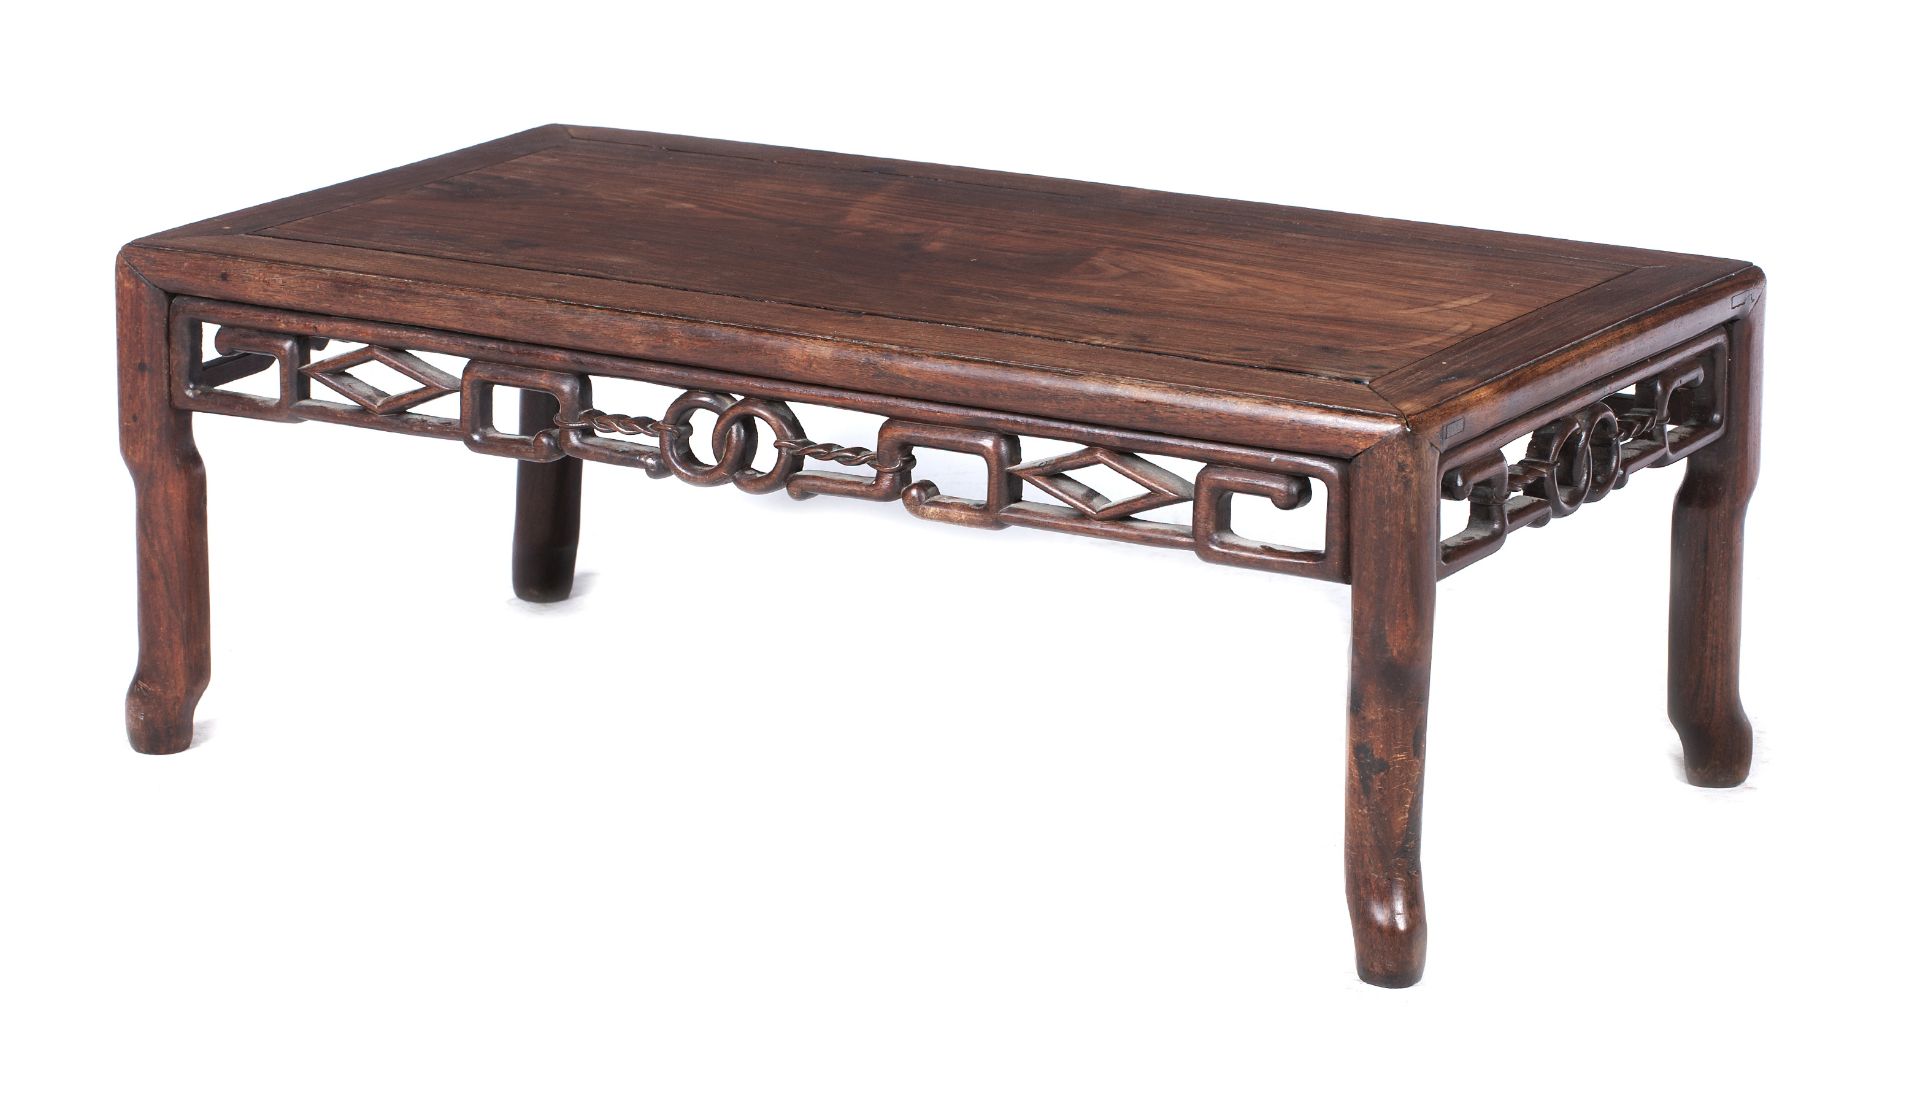 A small hardwood Kang table